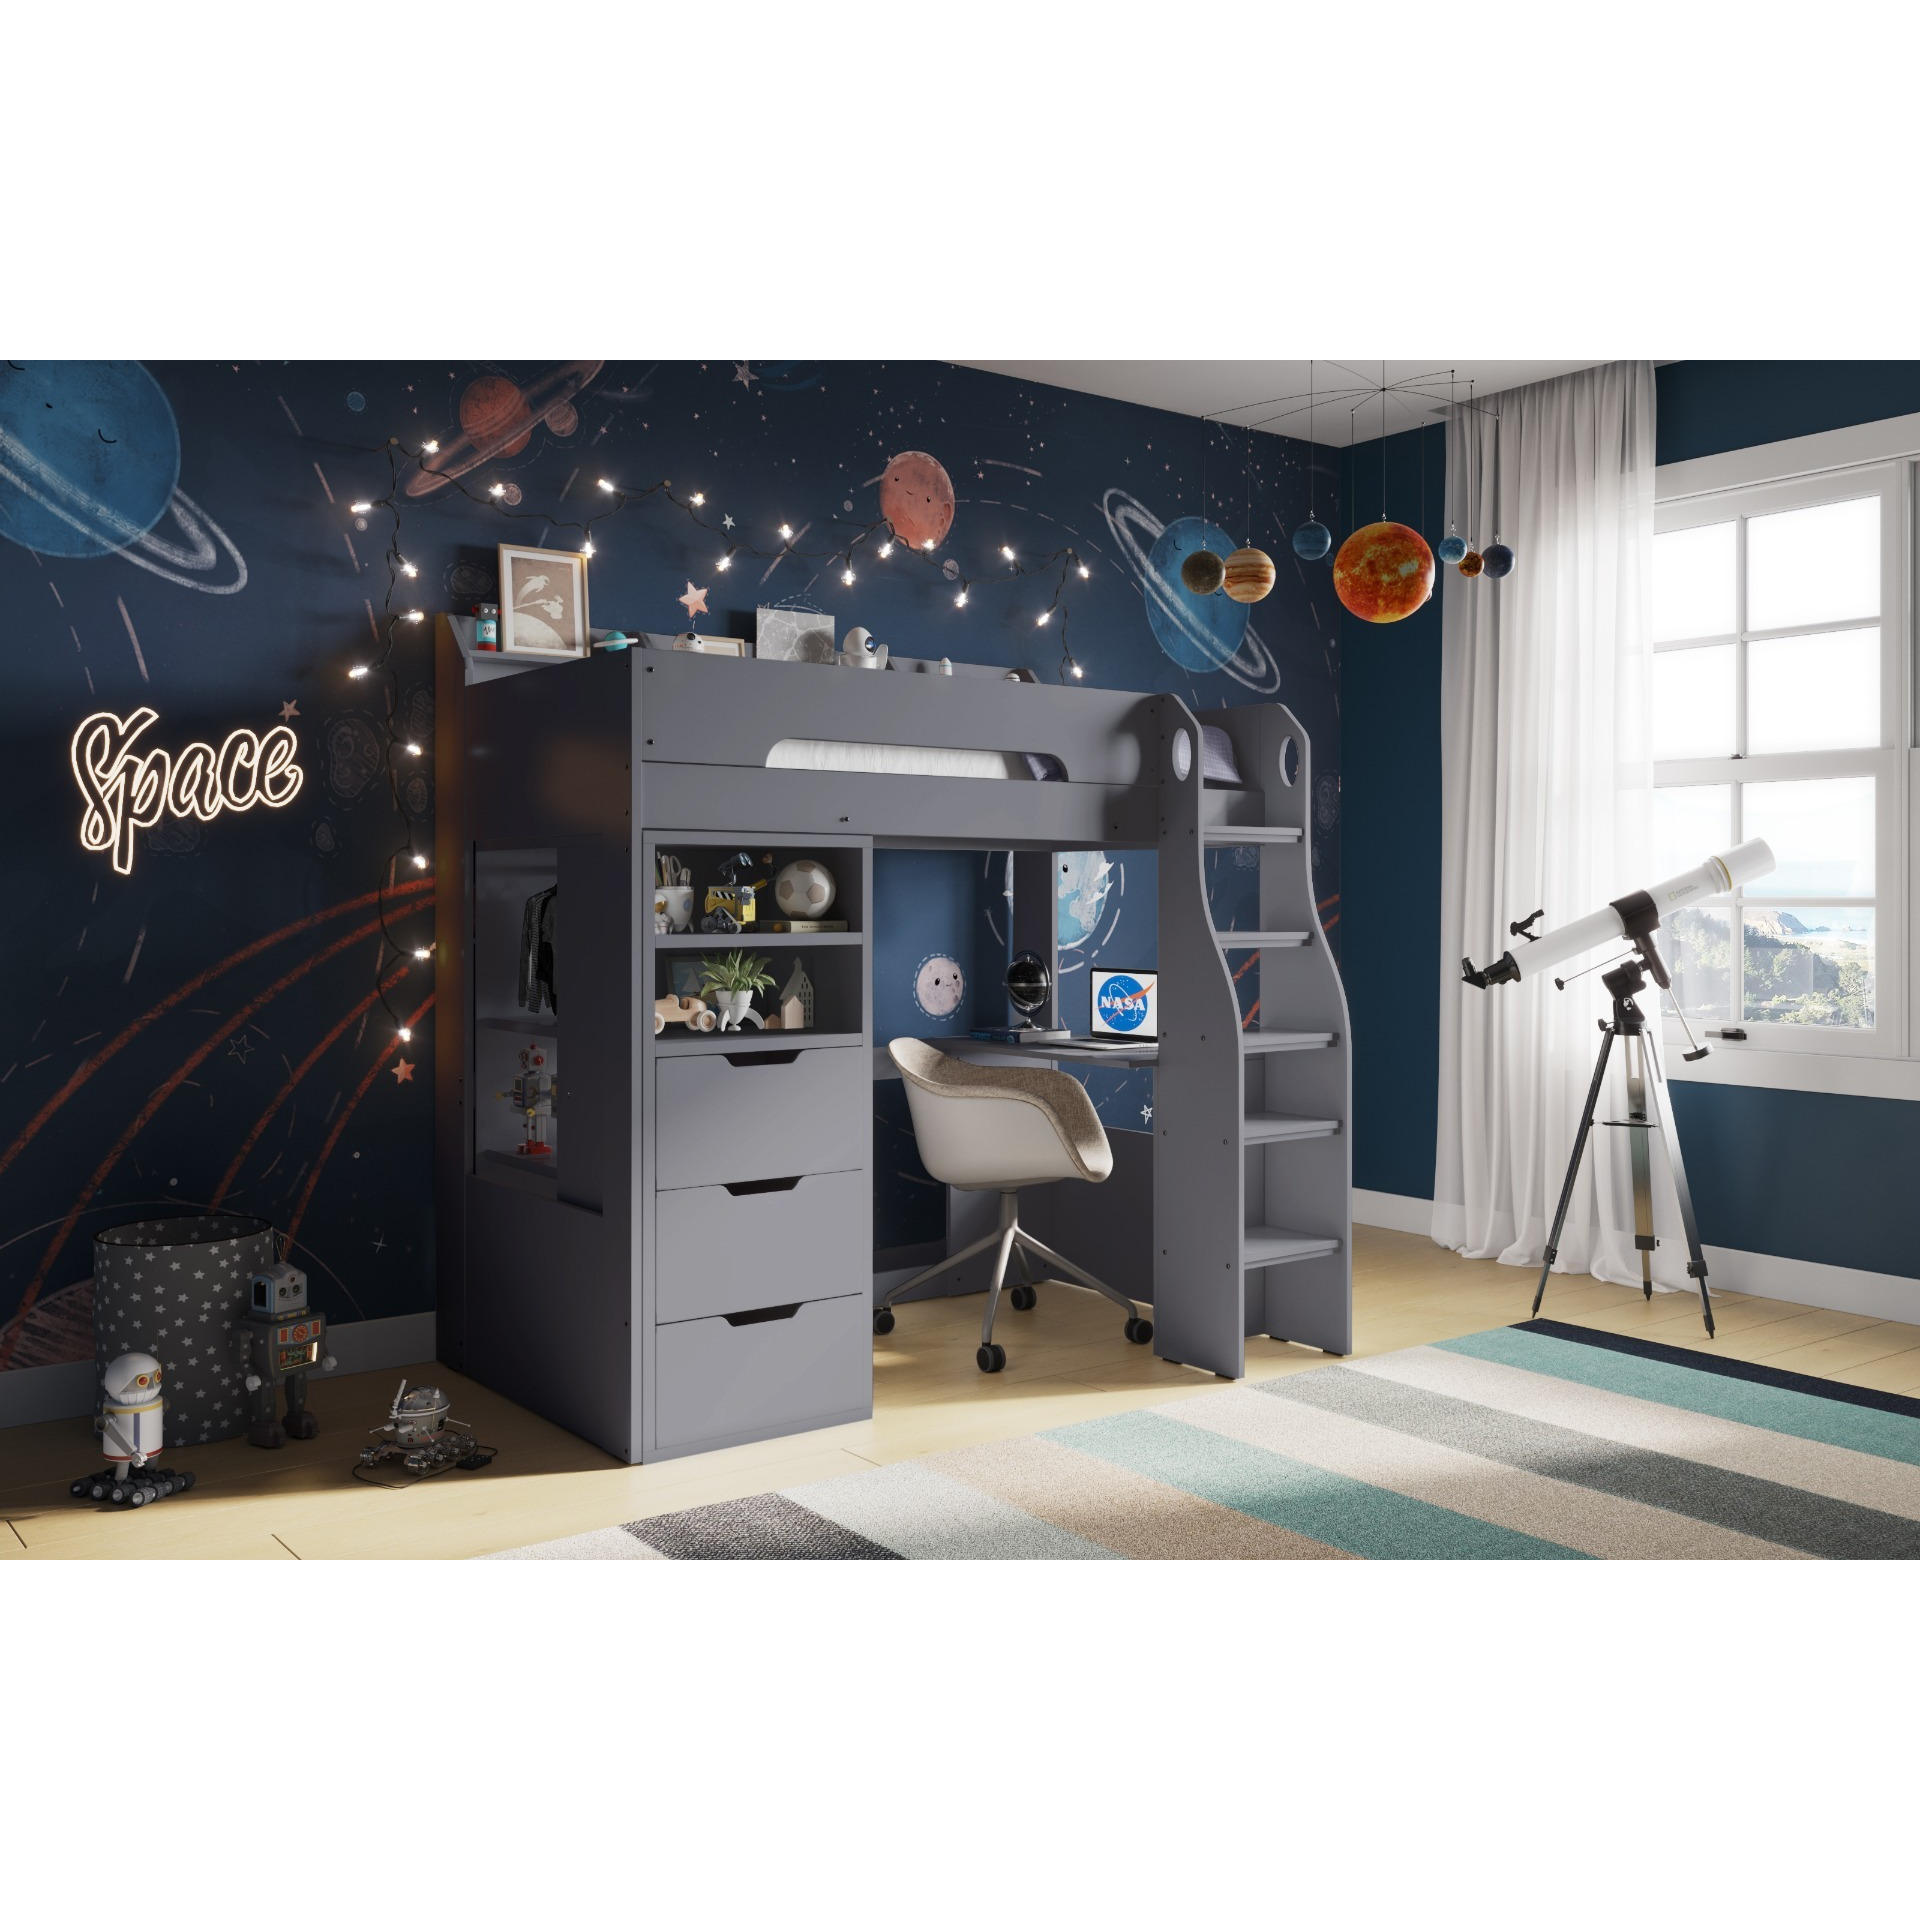 Flair Cosmic Storage Sleeper Bed Grey - image 1